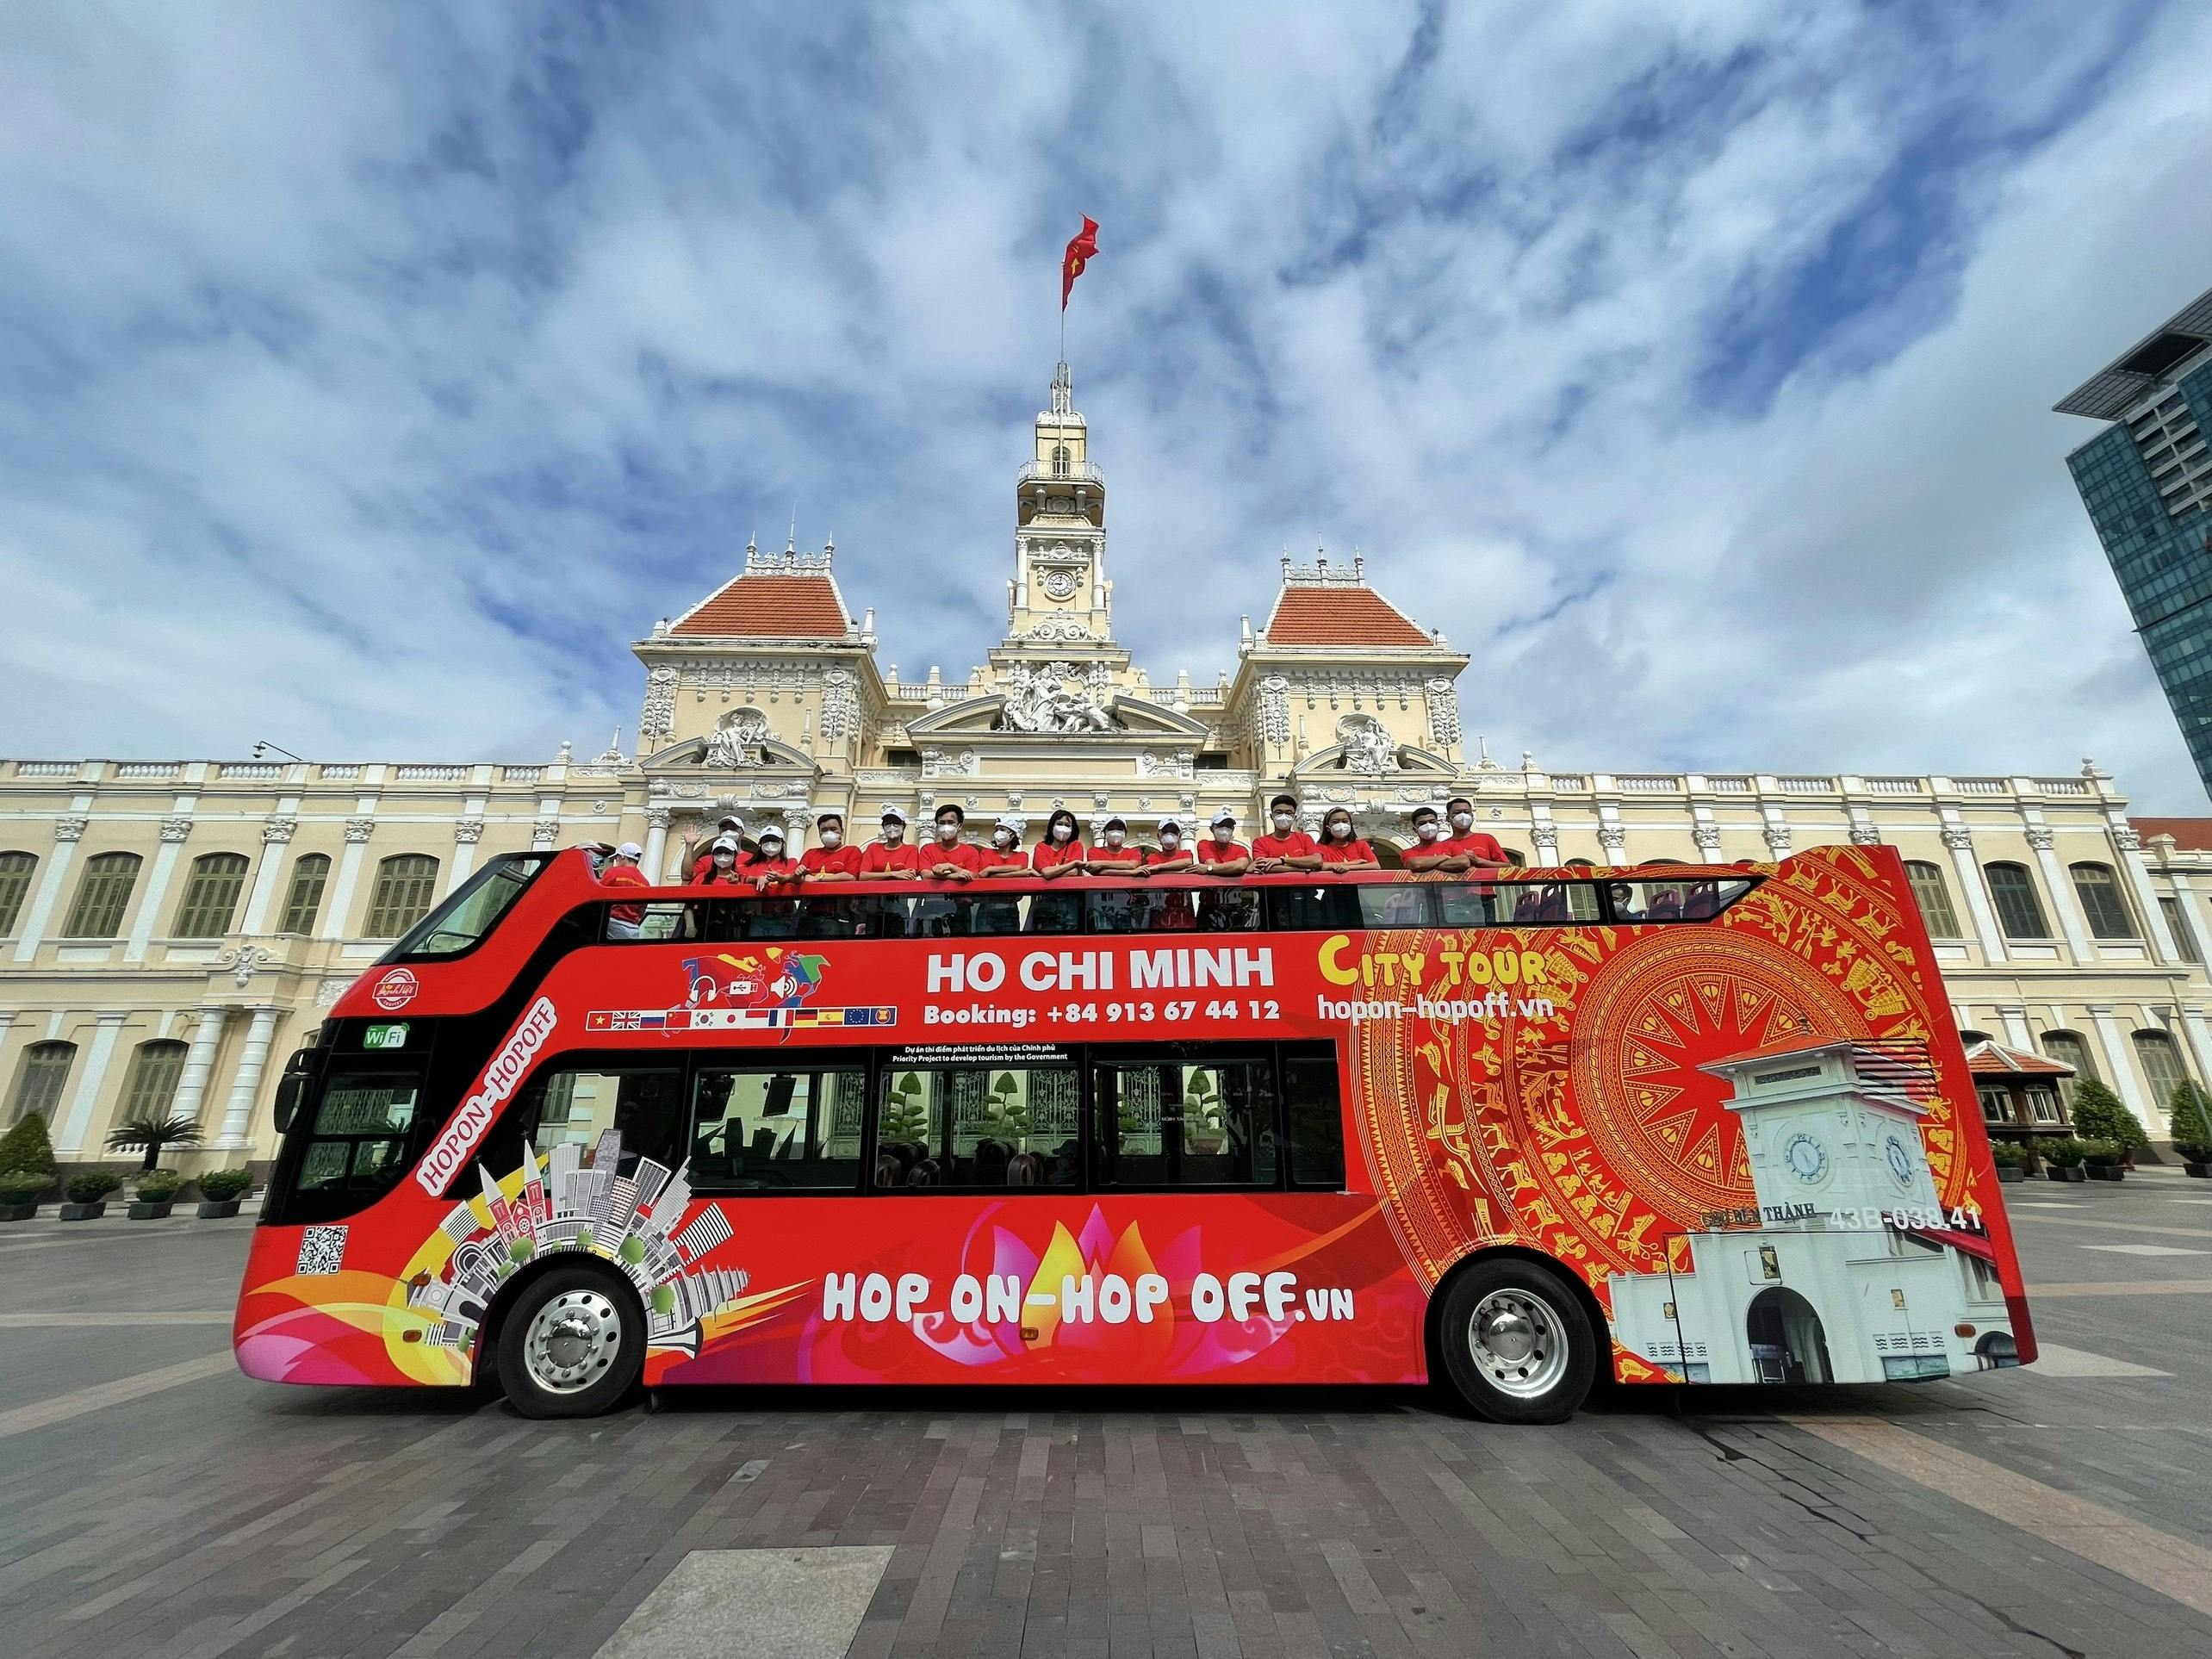 Ho Chi Minh City hop-on hop-off bus tour